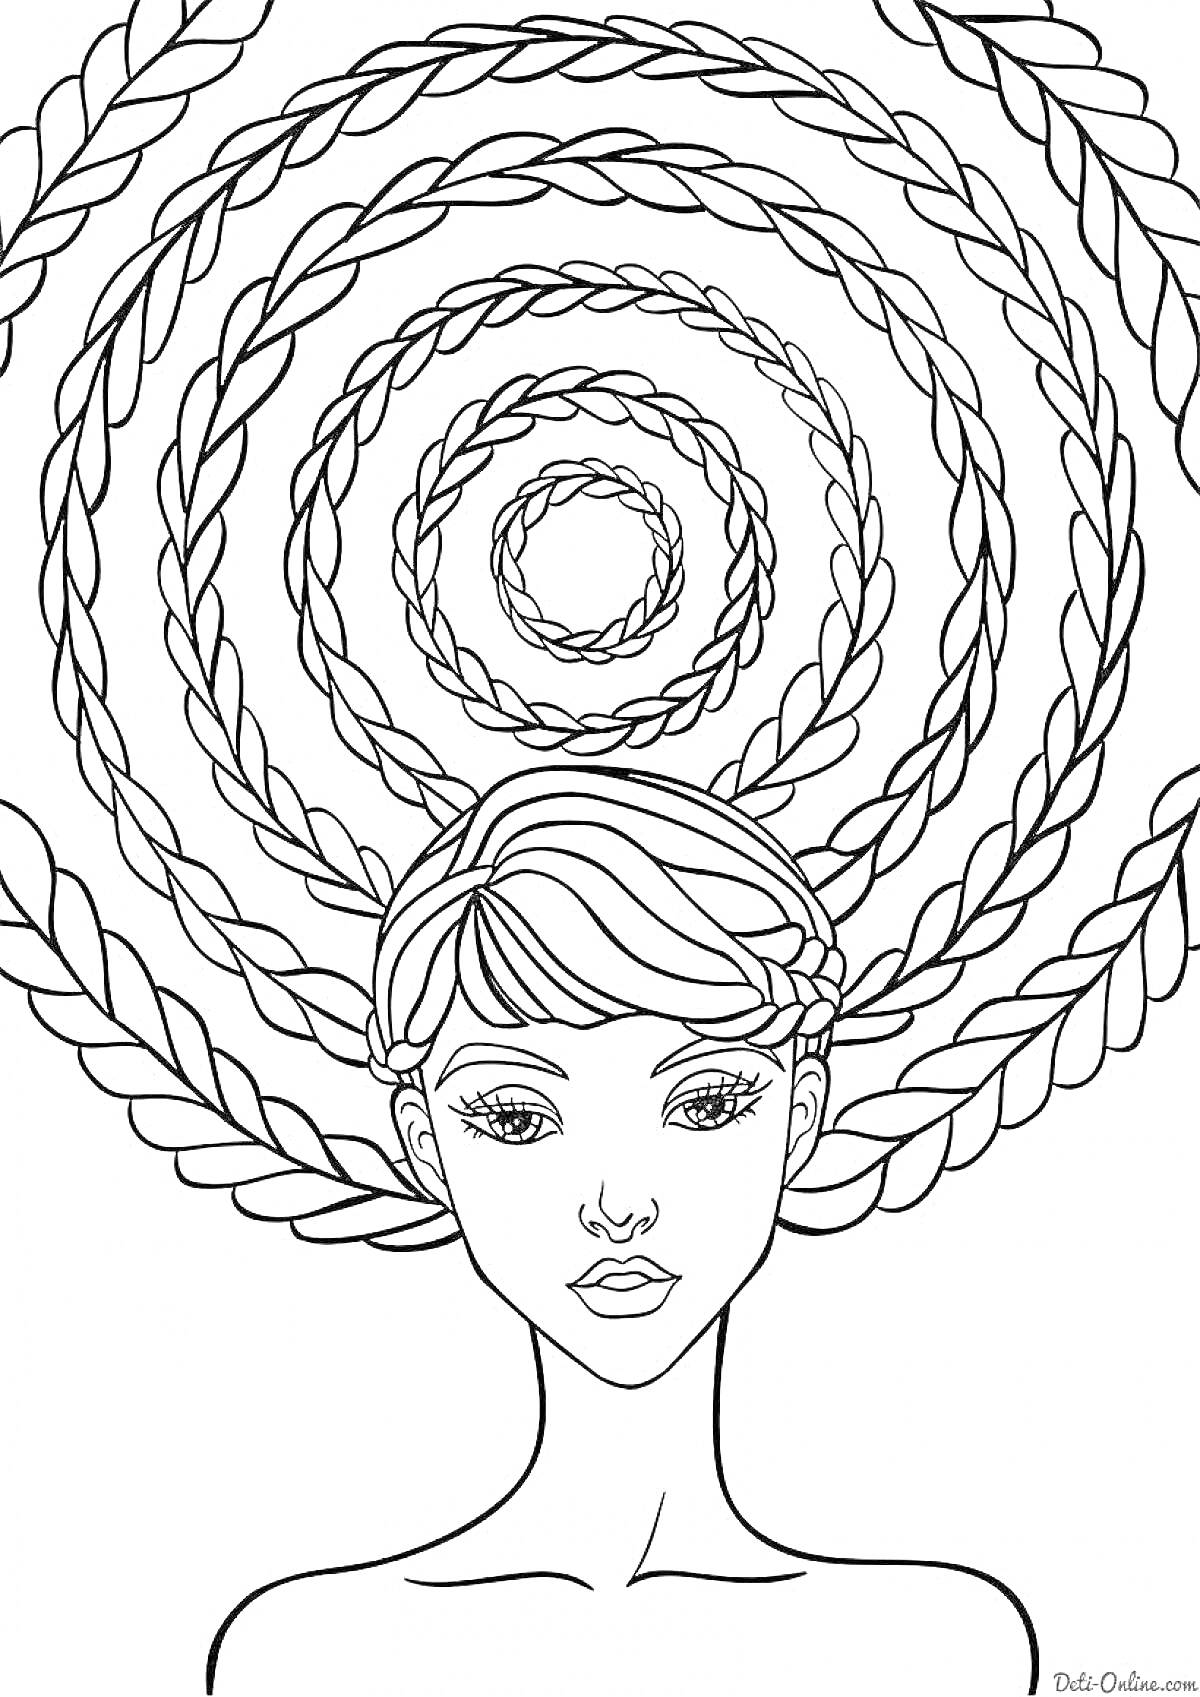 Раскраска Портрет девушки с короткими волосами на фоне кольцевых косичек